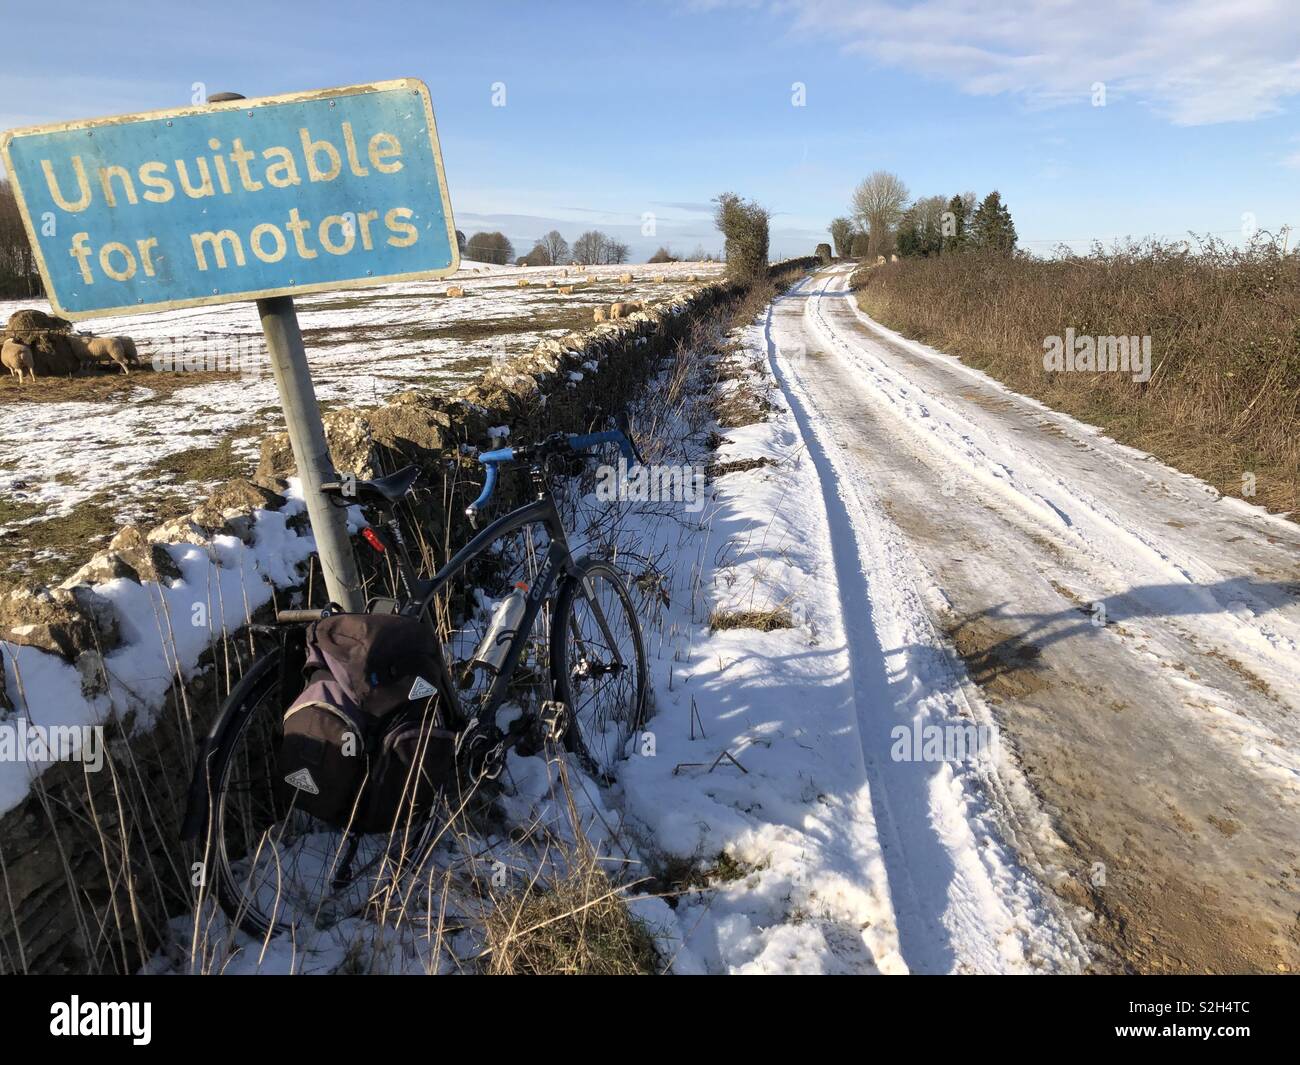 Ciclismo de aventura en invierno profundo en los Cotswolds sobre una antigua vía romana cubierto con nieve mostrando una bicicleta cuaresma contra un cartel que decía "no apta para motores". Foto de stock